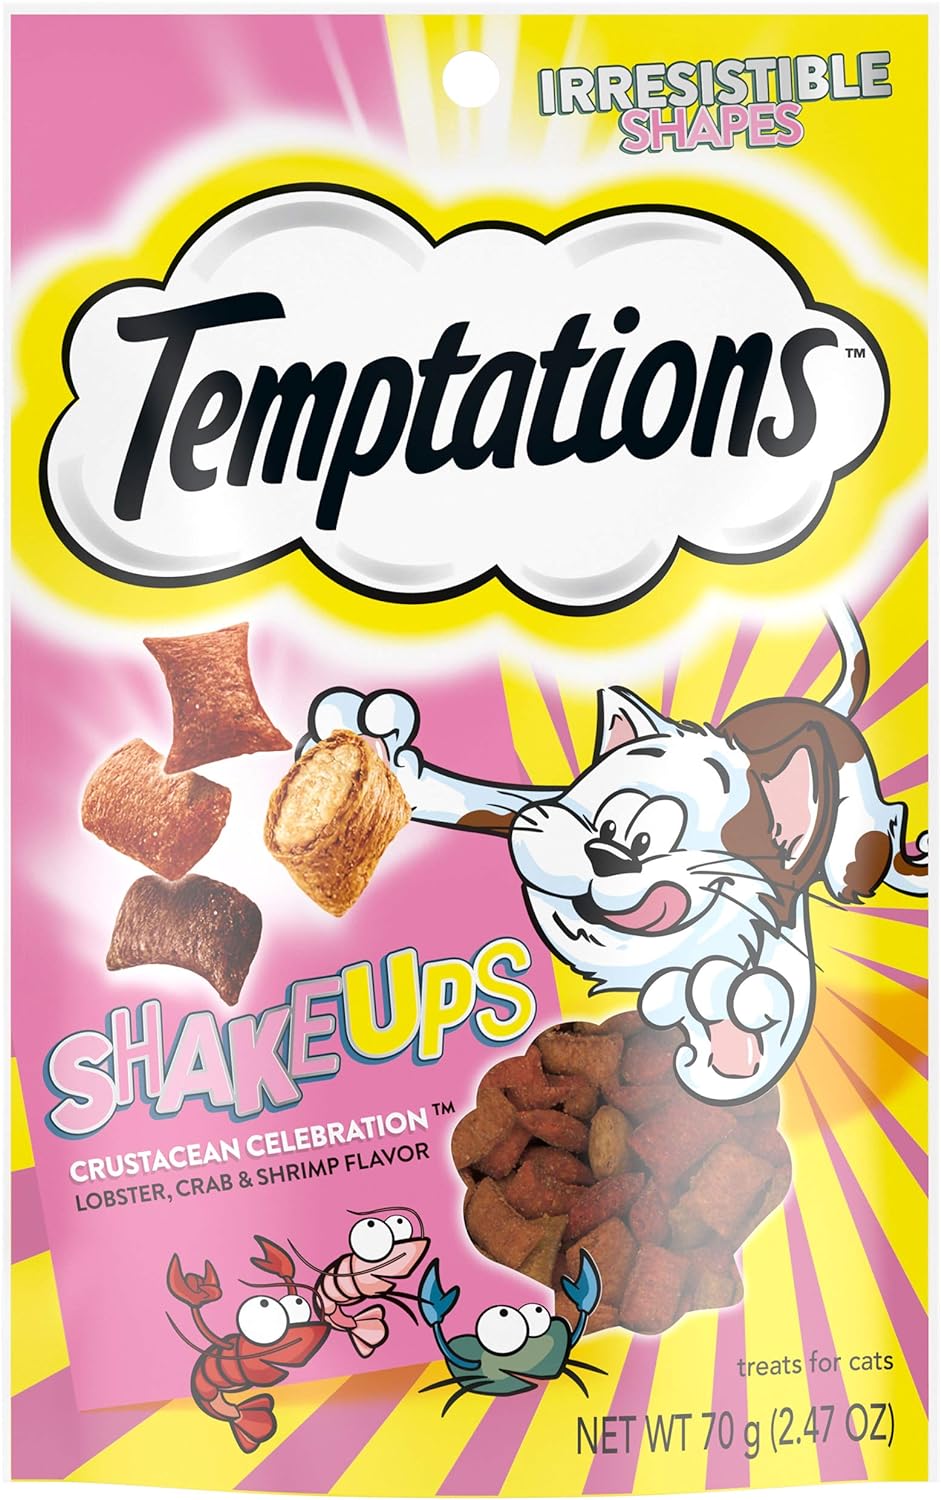 TEMPTATIONS ShakeUps Crunchy and Soft Cat Treats, Crustacean Celebration Flavor, (12) 2.47 oz. Pouches